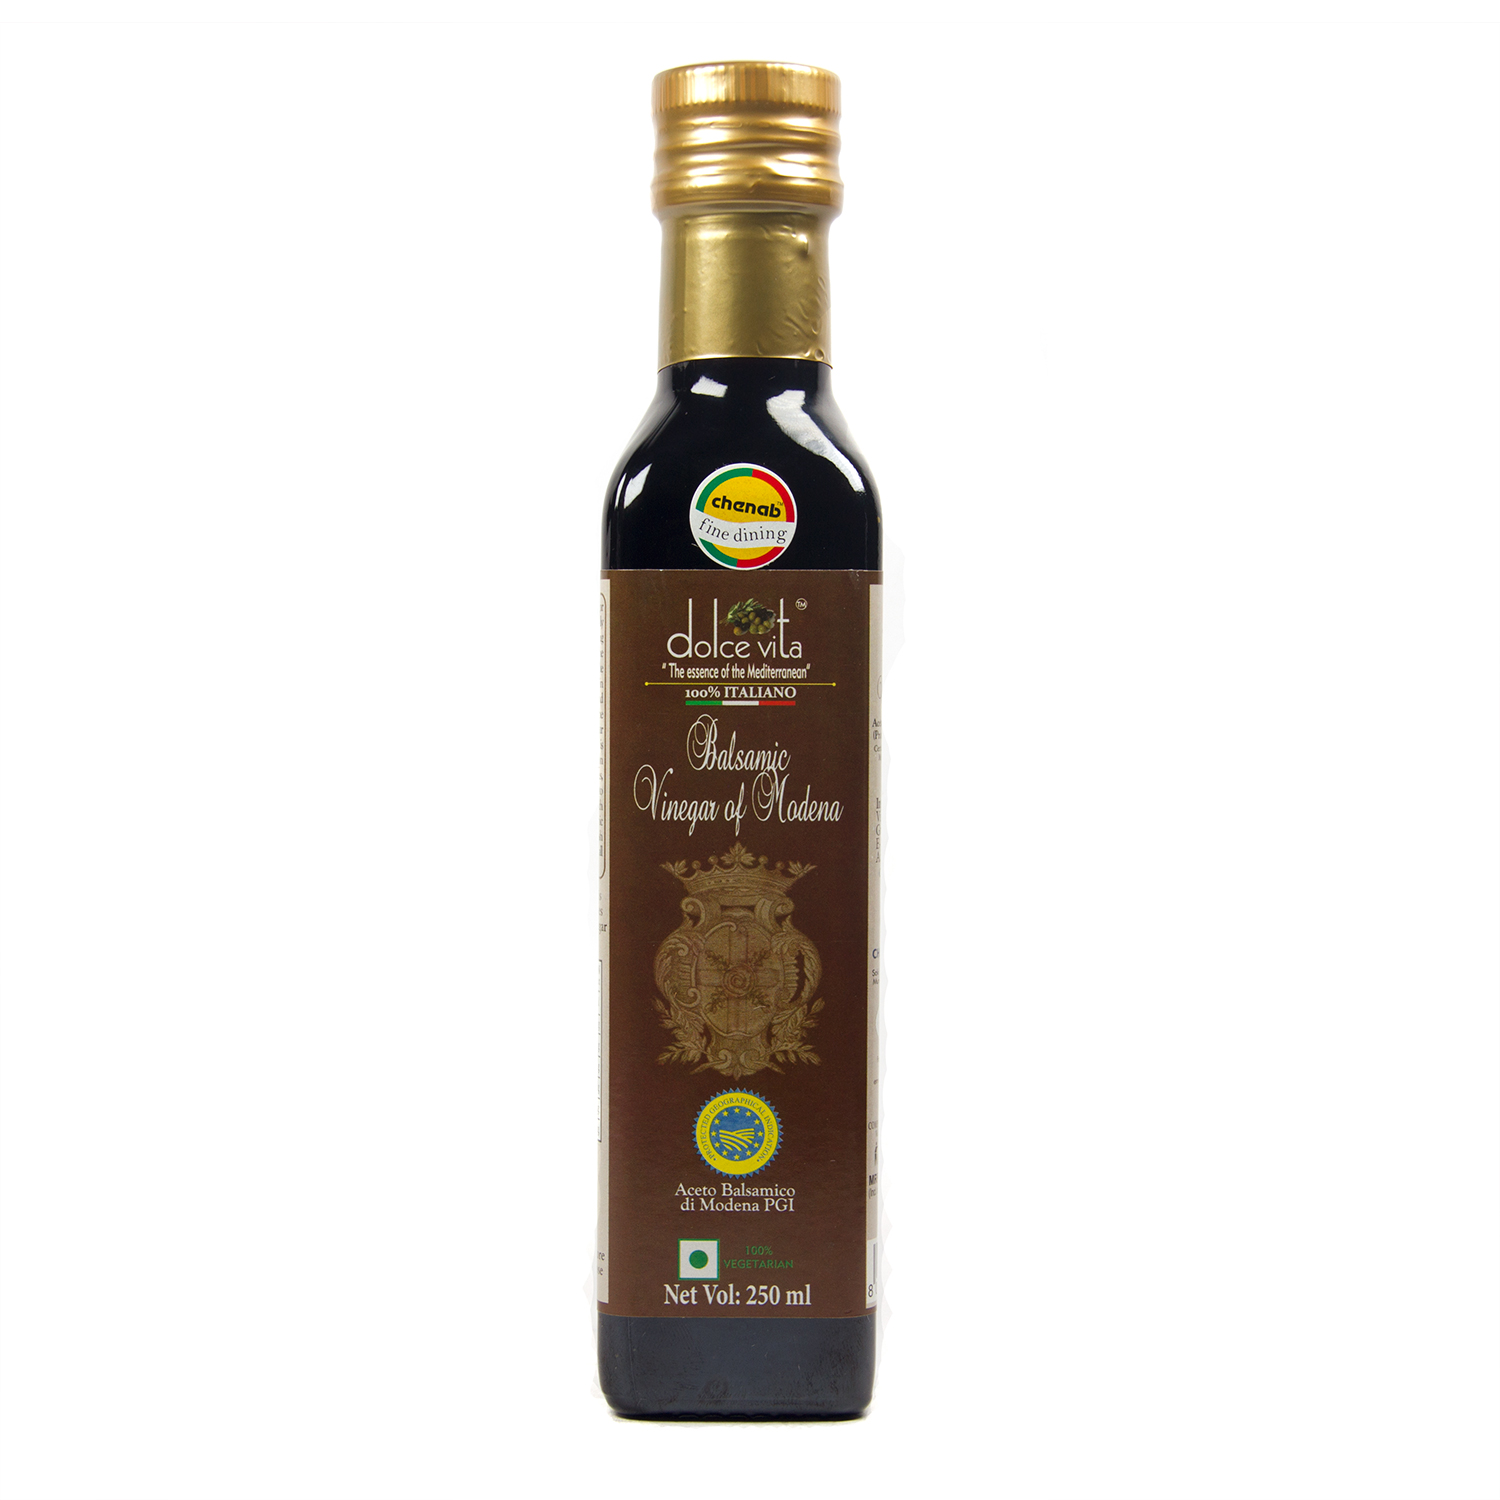 Dolce Vita Balsamic Vinegar of Modena - Chenab Impex Pvt. Ltd.